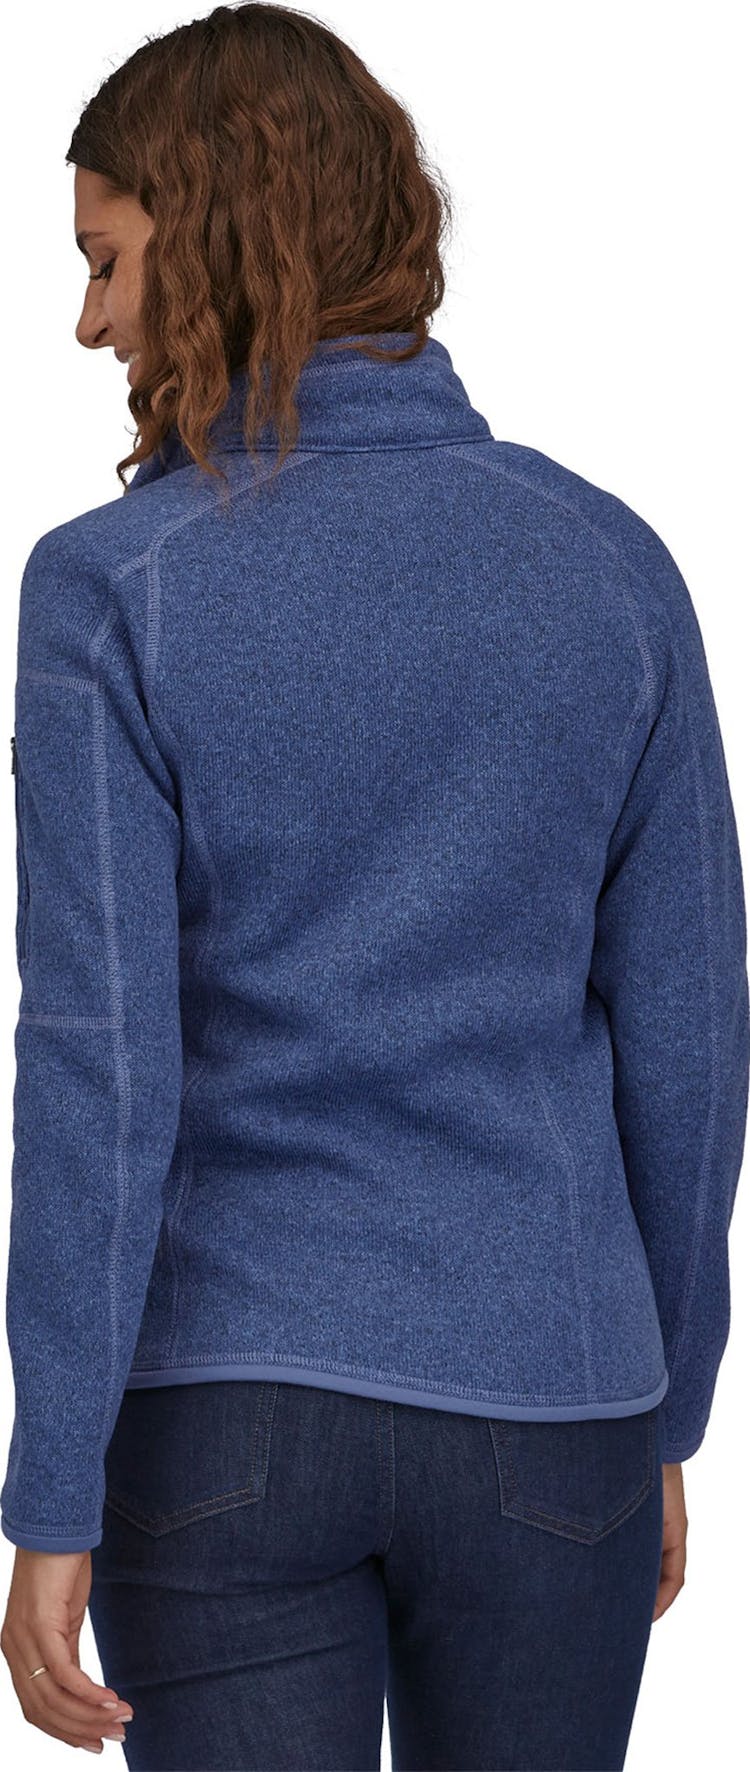 Numéro de l'image de la galerie de produits 2 pour le produit Chandail Better Sweater - Femme